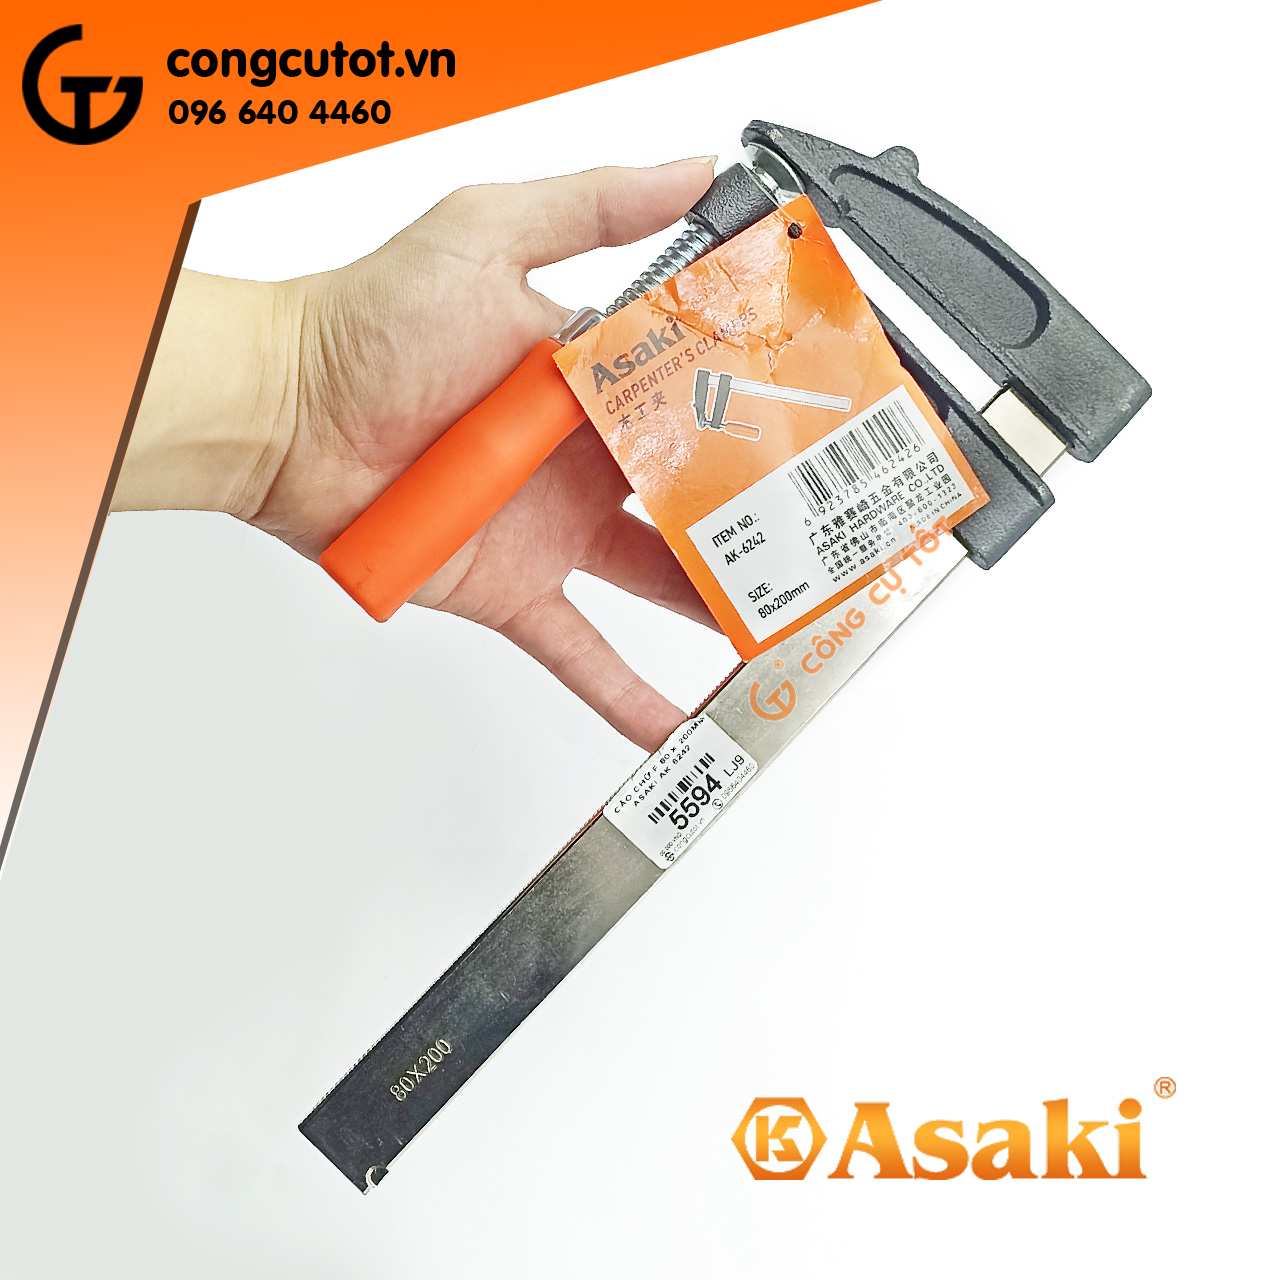 Cảo kẹp gỗ chữ F tay nhựa 80 x 200mm Asaki AK-6242 chất lượng cao, giá tốt